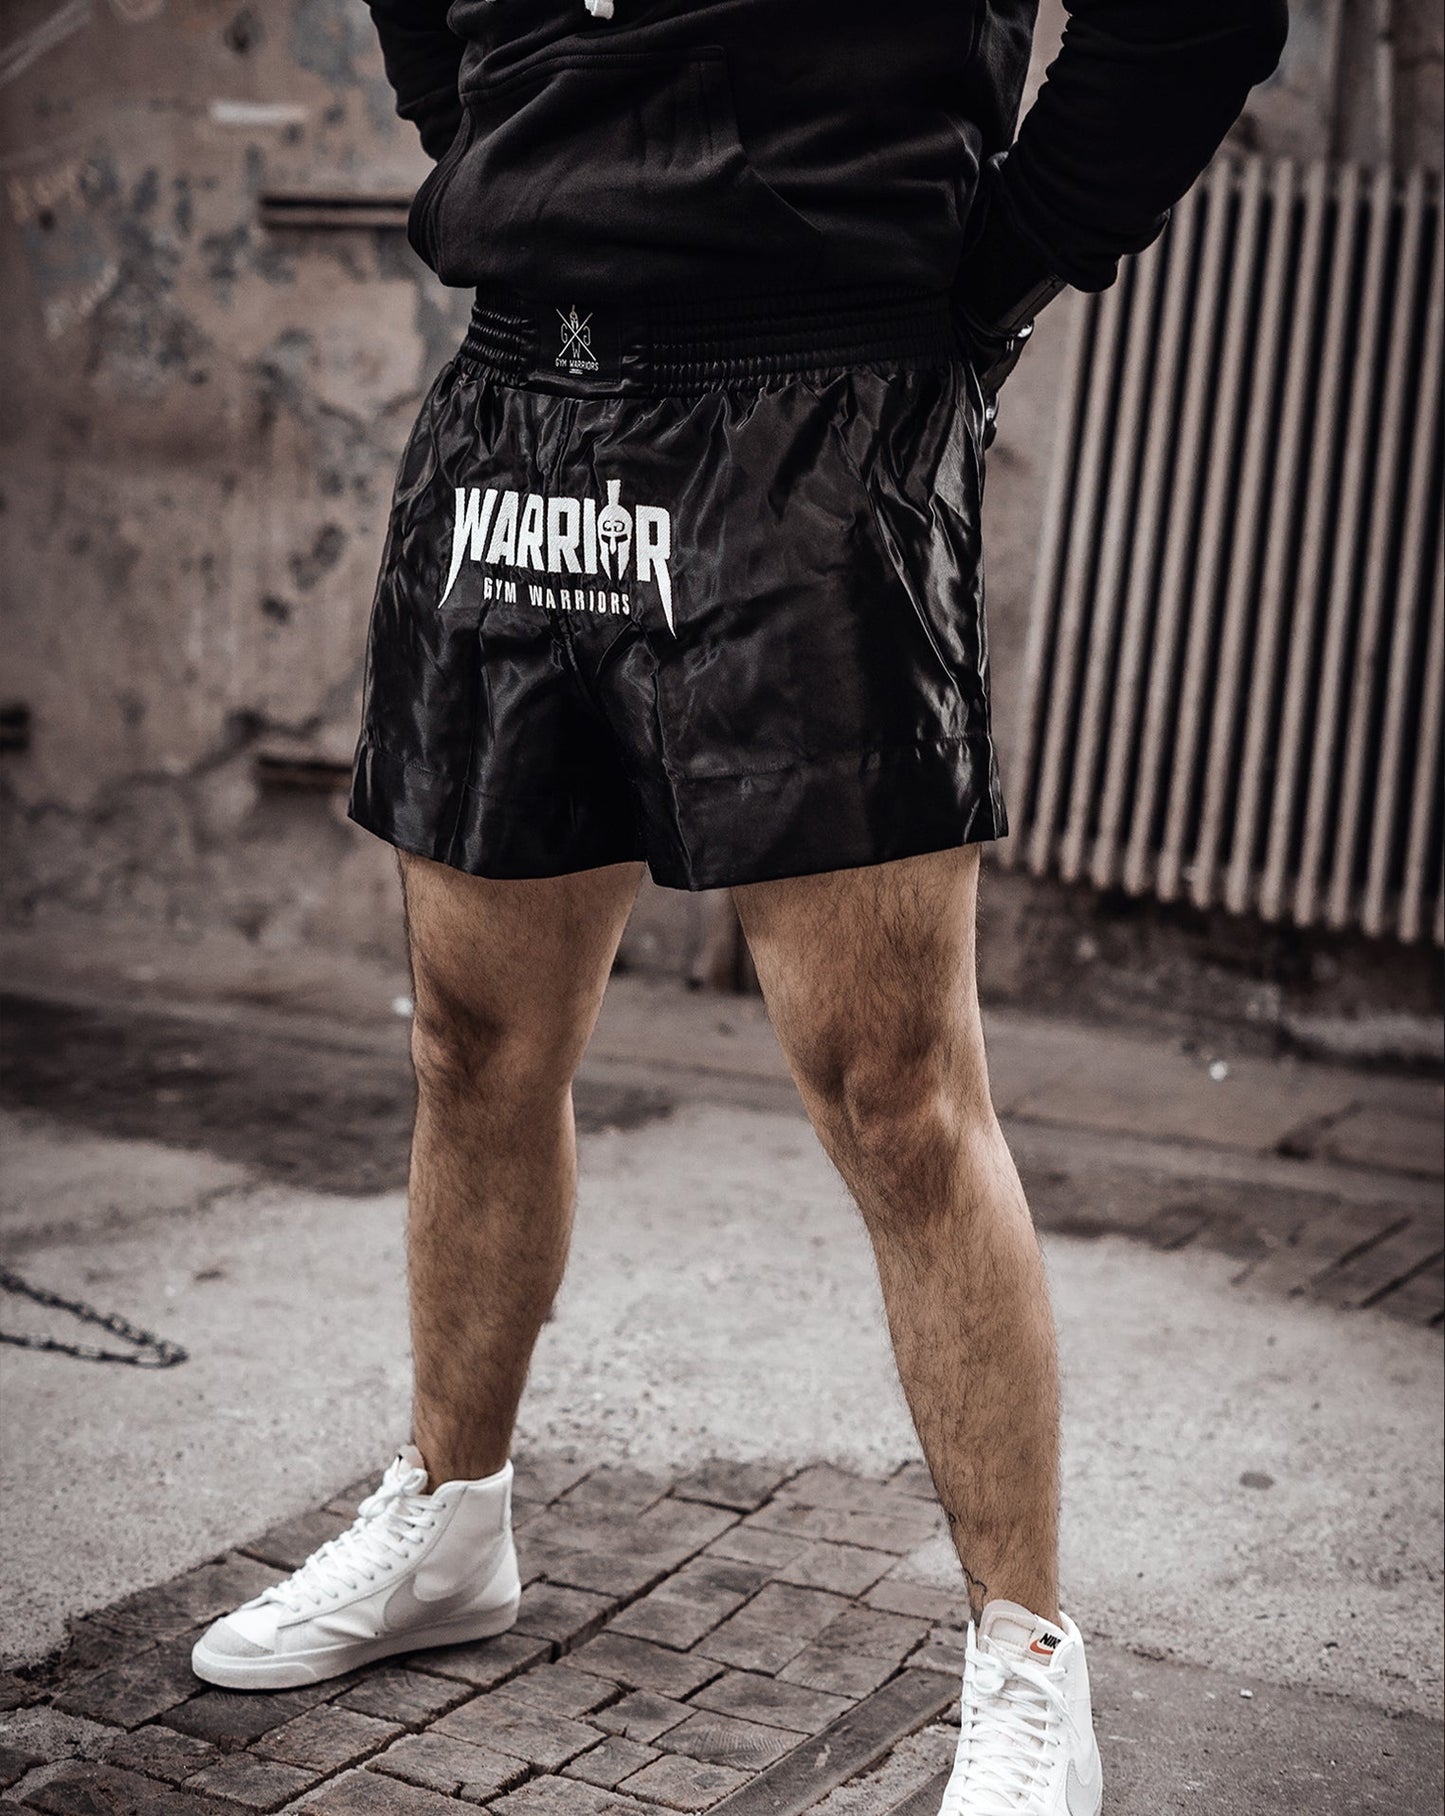 Stylische und funktionale Muay Thai Shorts von Gym Generation, bieten Komfort und Atmungsaktivität bei intensiven Workouts.